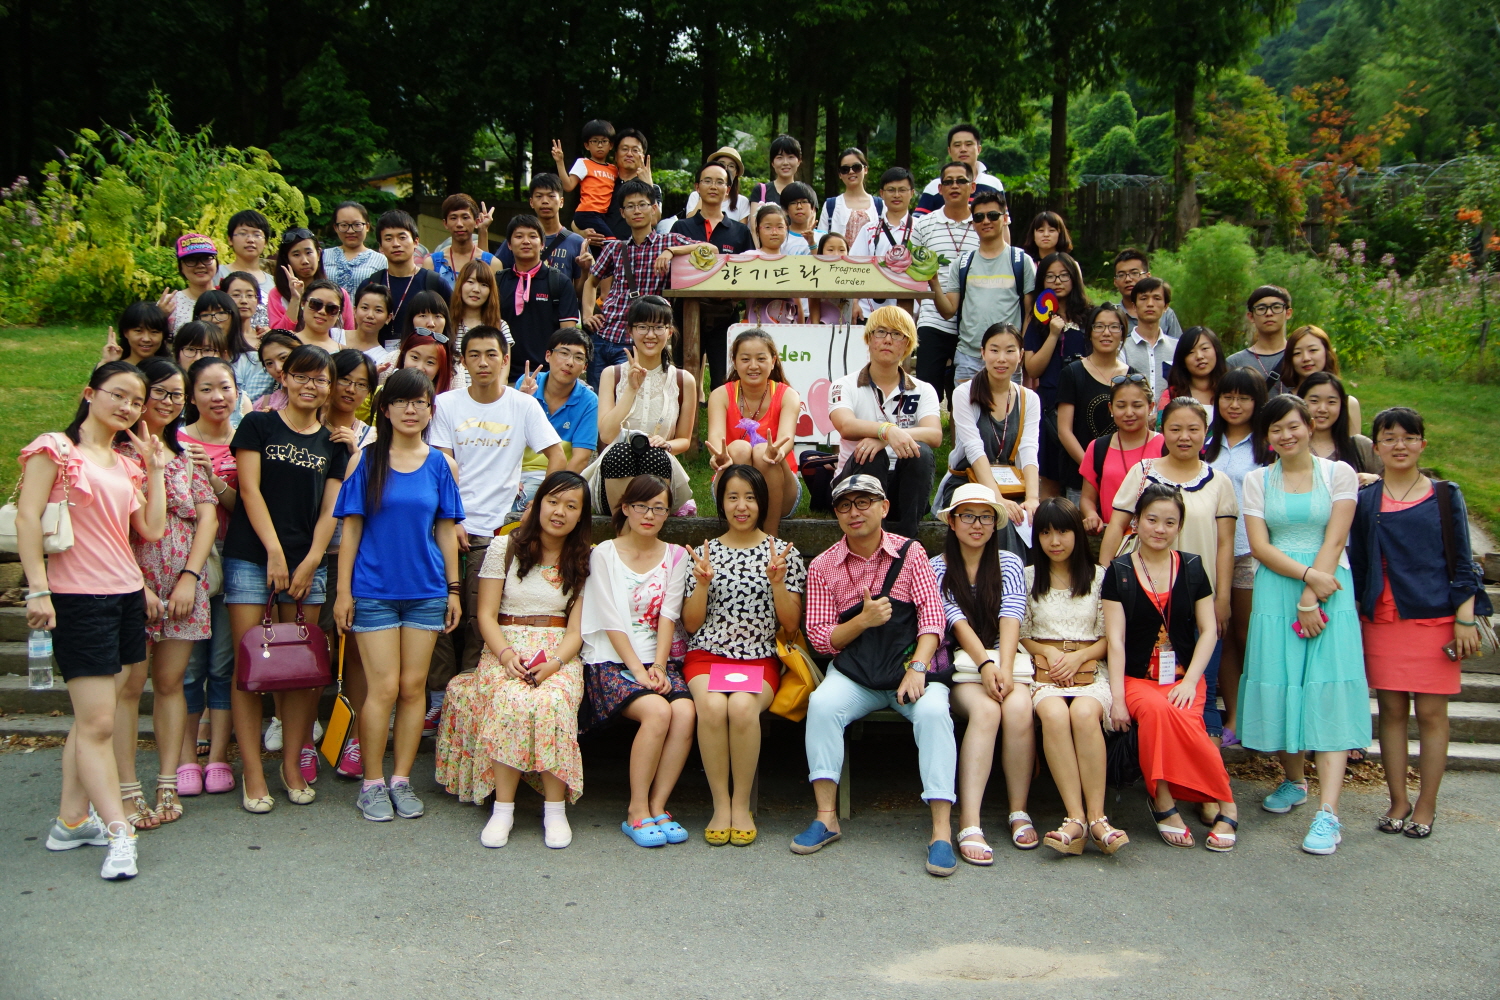 2013年庆北大学暑期学校 形象.